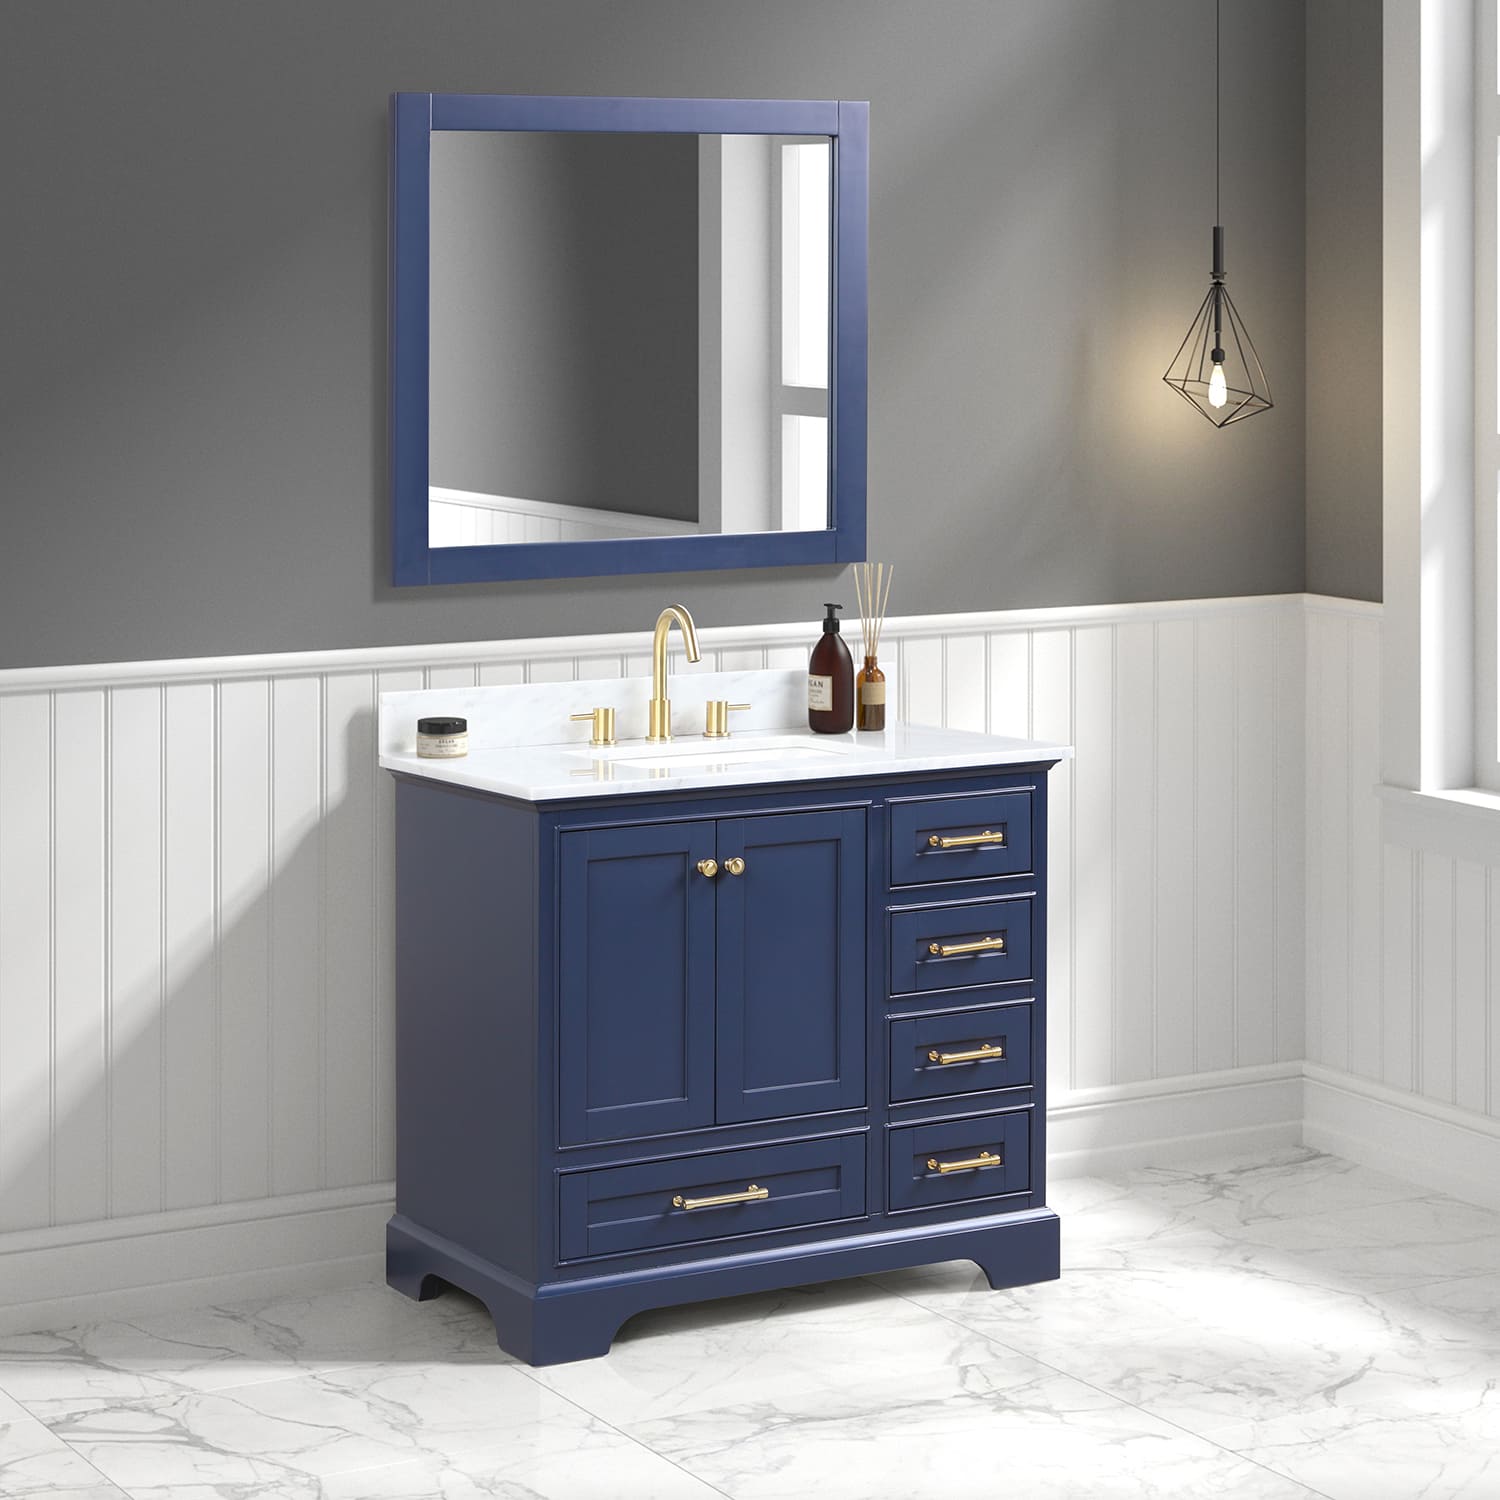 Copenhagen 36" Bathroom Vanity  #size_36"  #color_navy blue